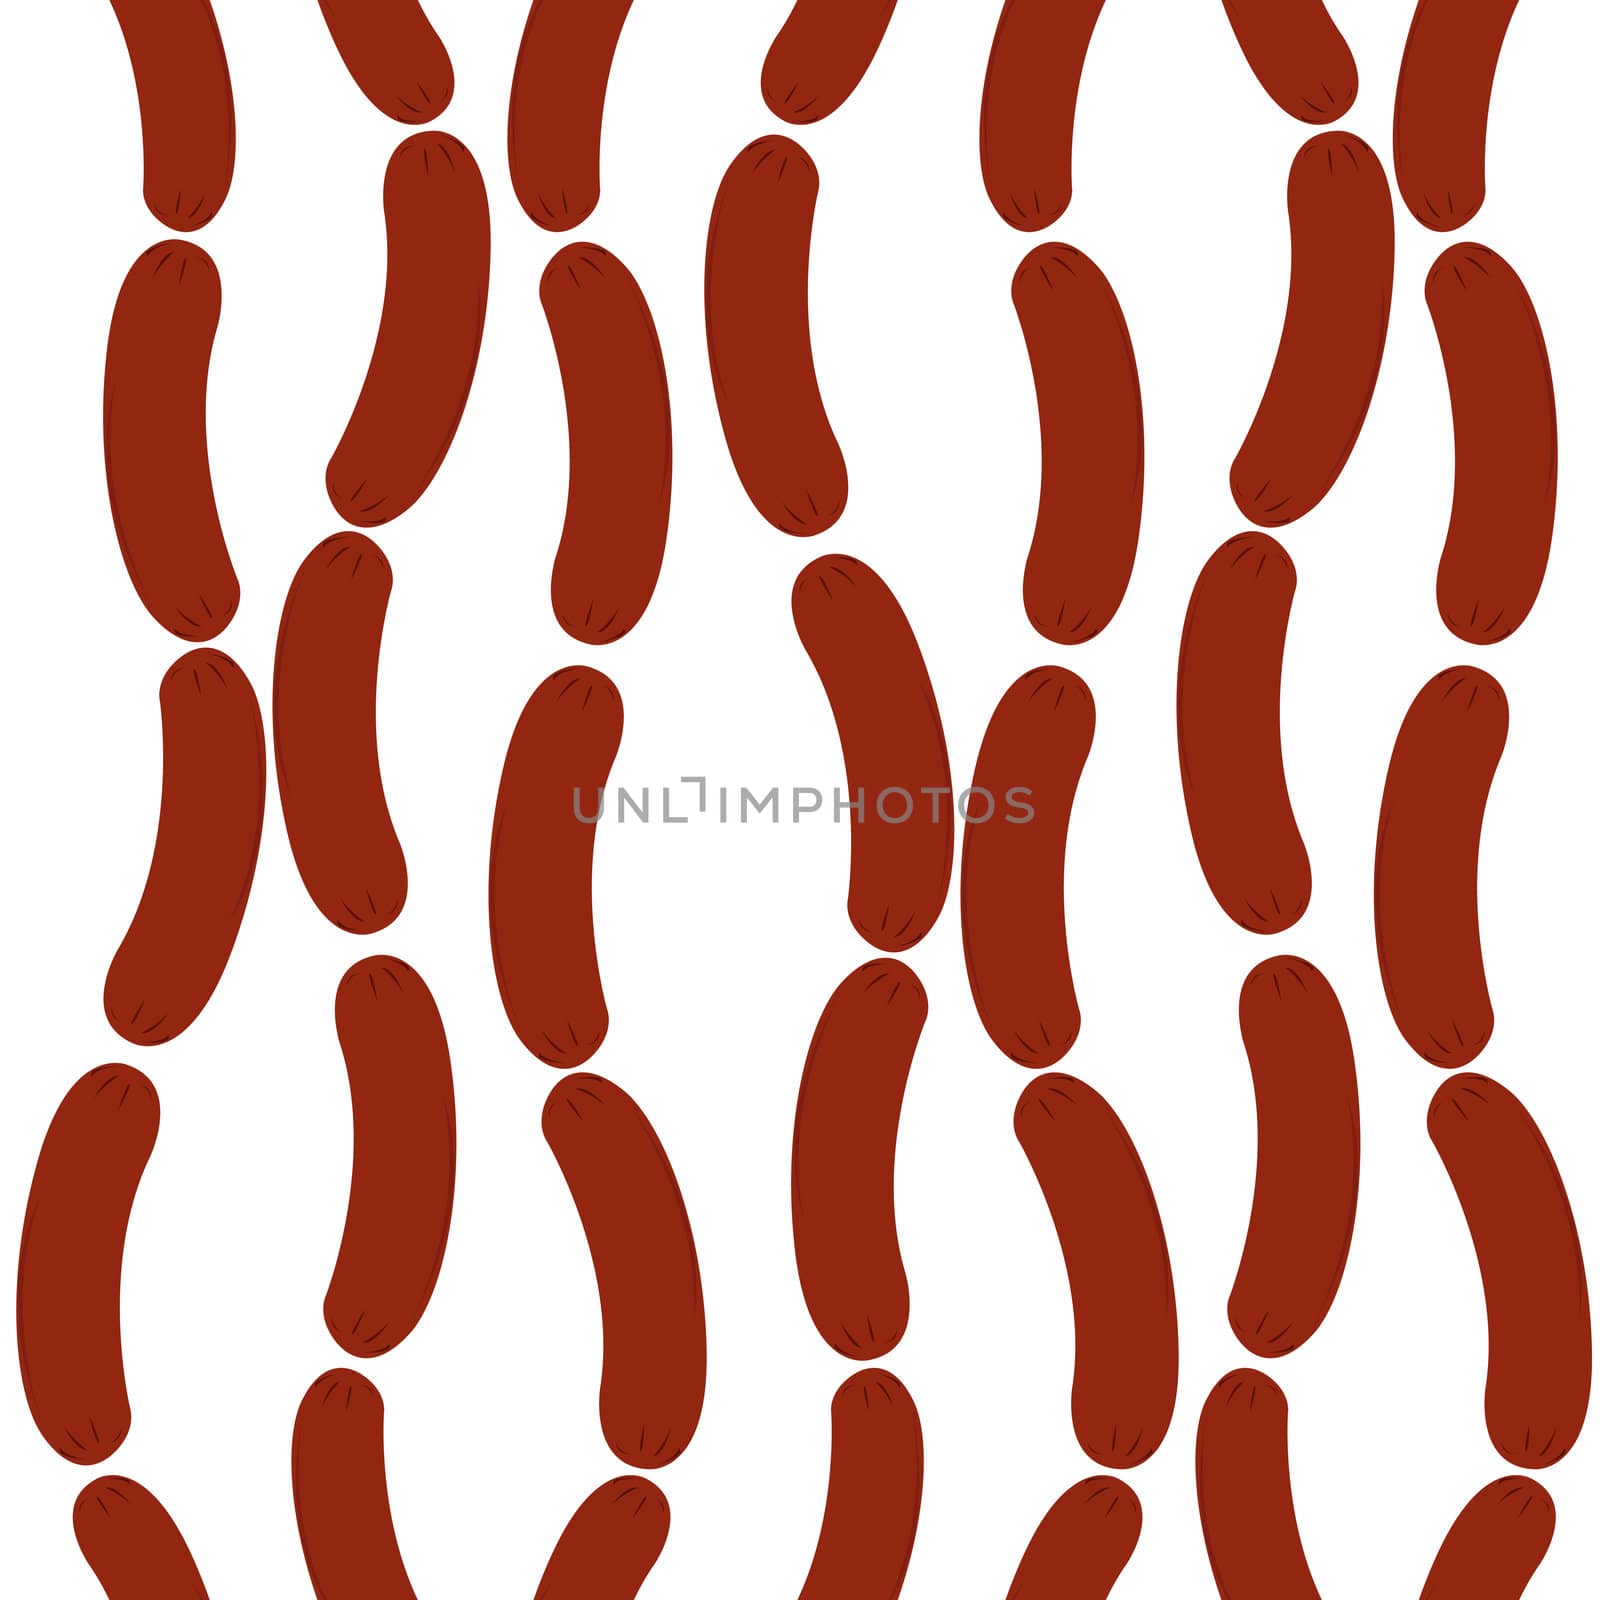 Hanging sauseges background illustration, pattern